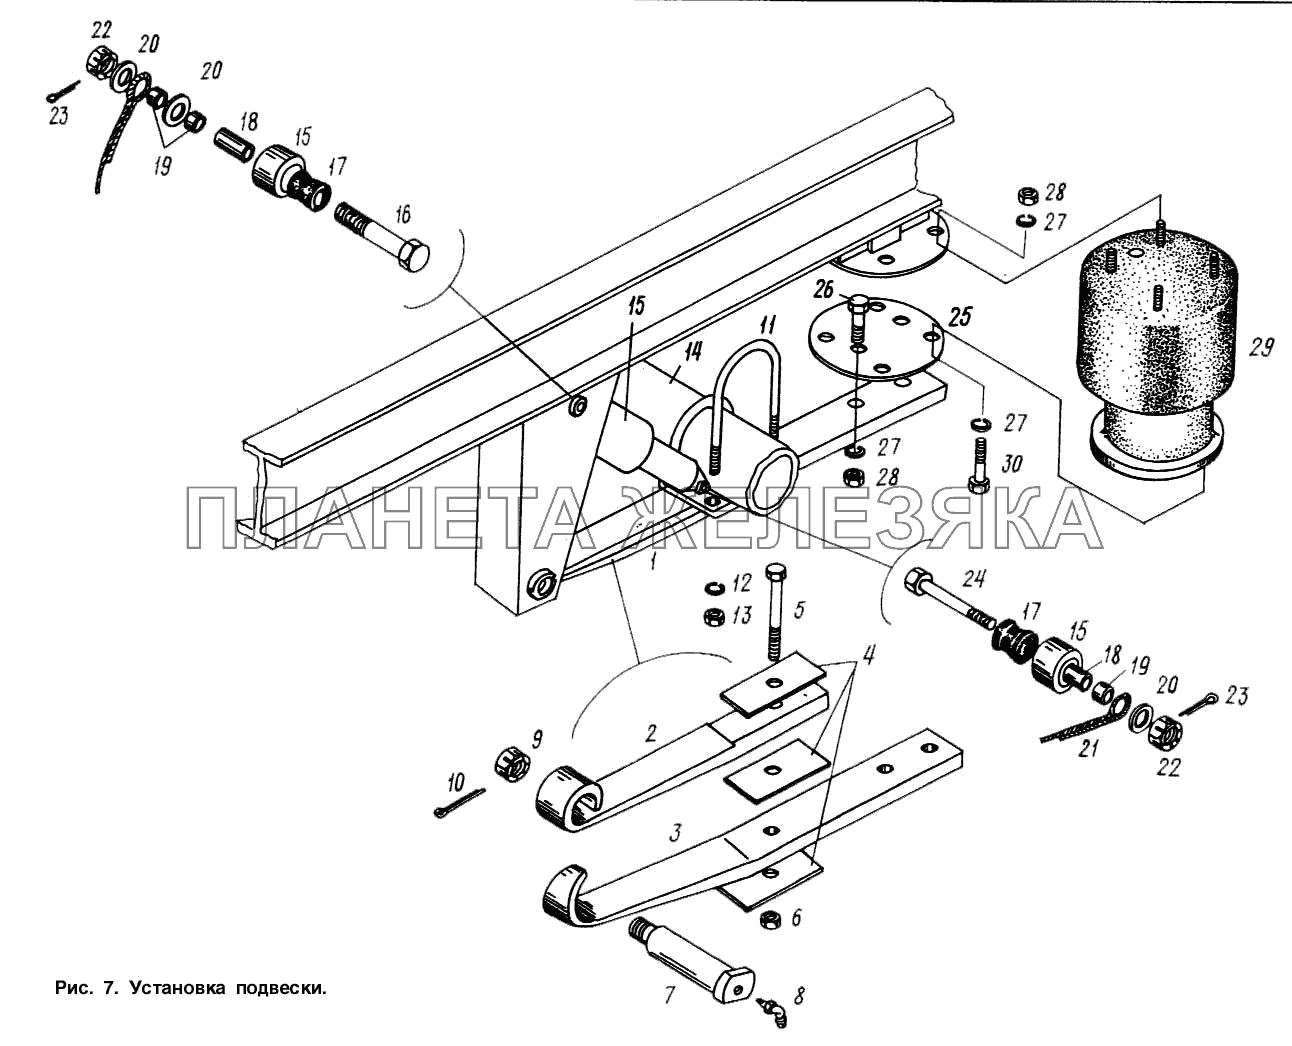 Установка подвески МАЗ-9758